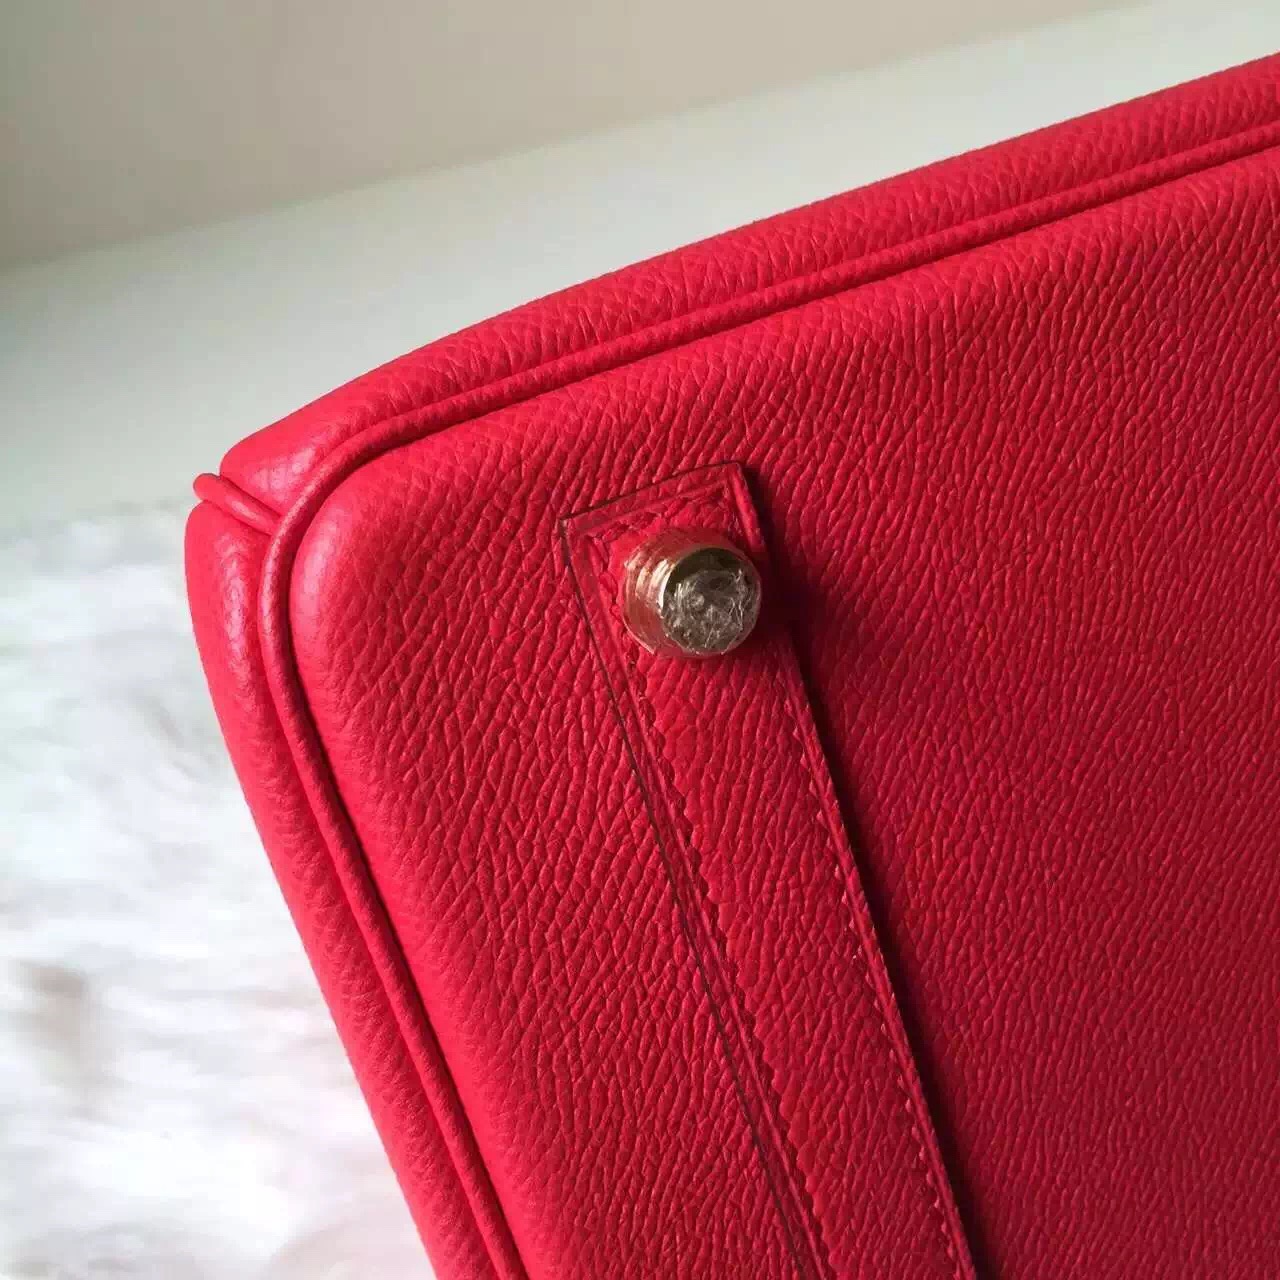 Elegant Women&#8217;s Handbag Hermes Azalea Red Epsom Leather Birkin 30cm